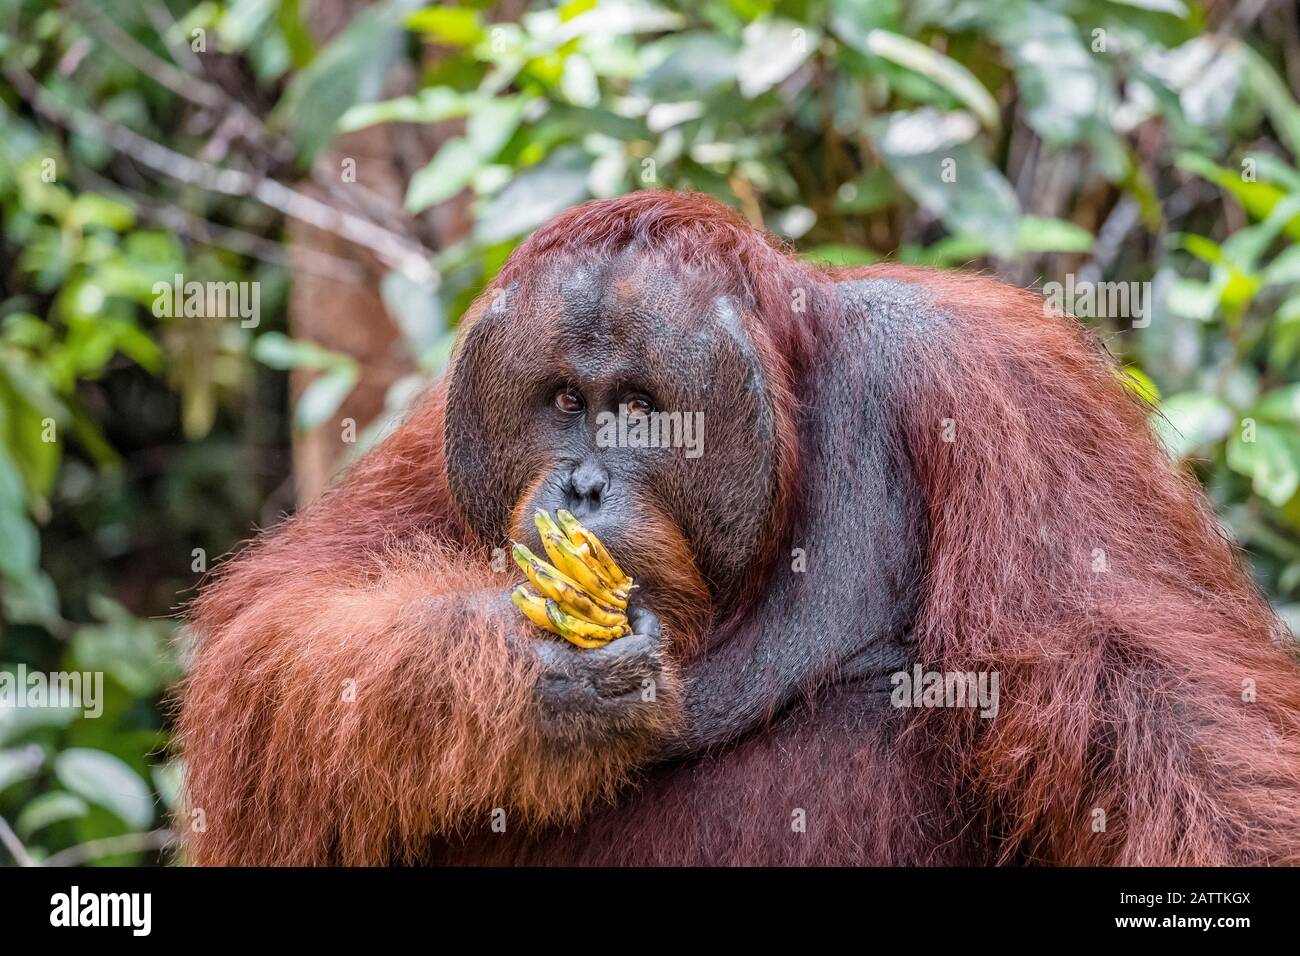 male Bornean orangutan, Pongo pygmaeus, at feeding platform Pondok Tanggui, Borneo, Indonesia Stock Photo